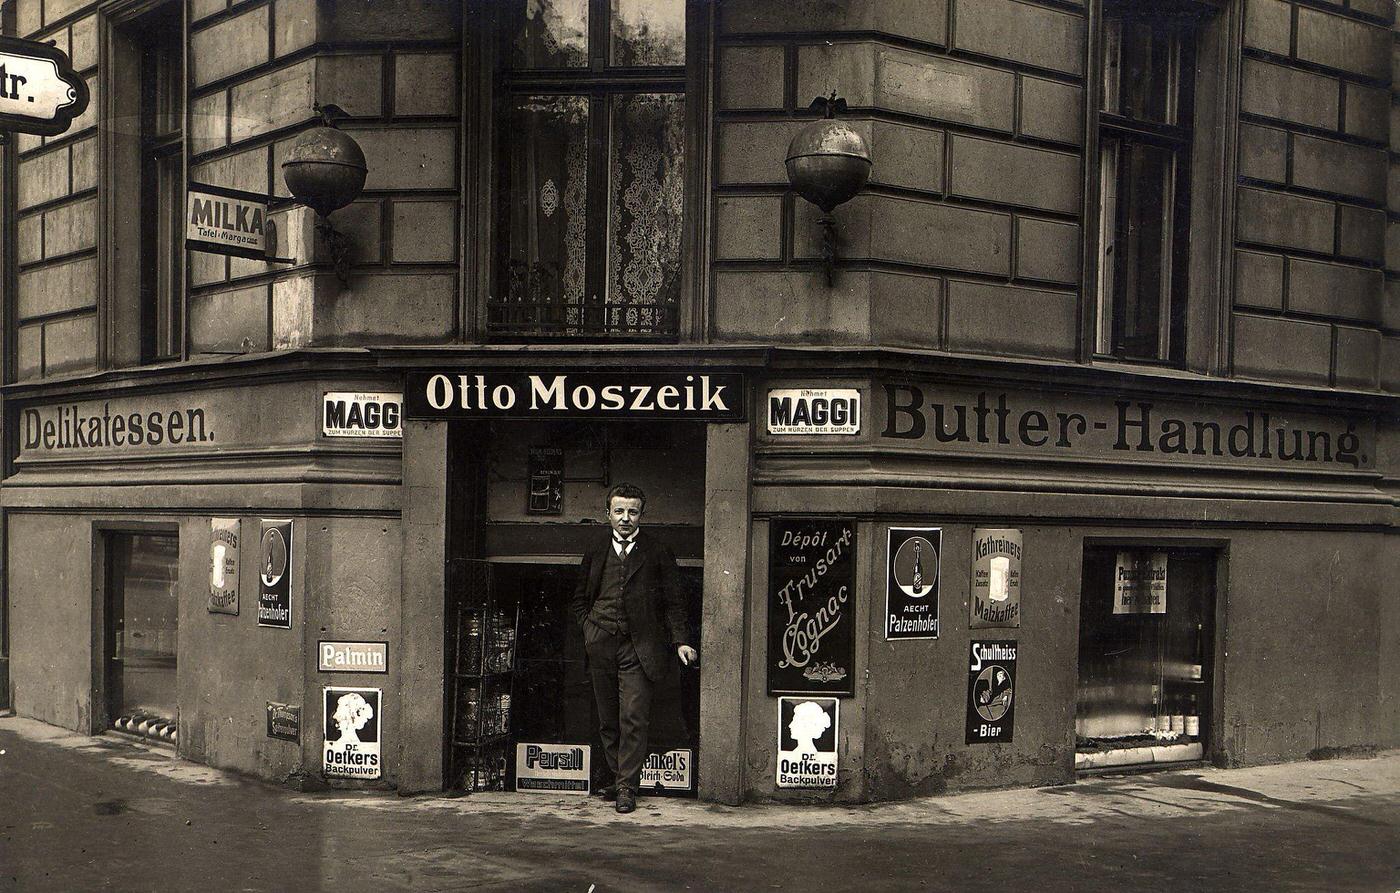 Verkaufsräume, Berlin, 1930